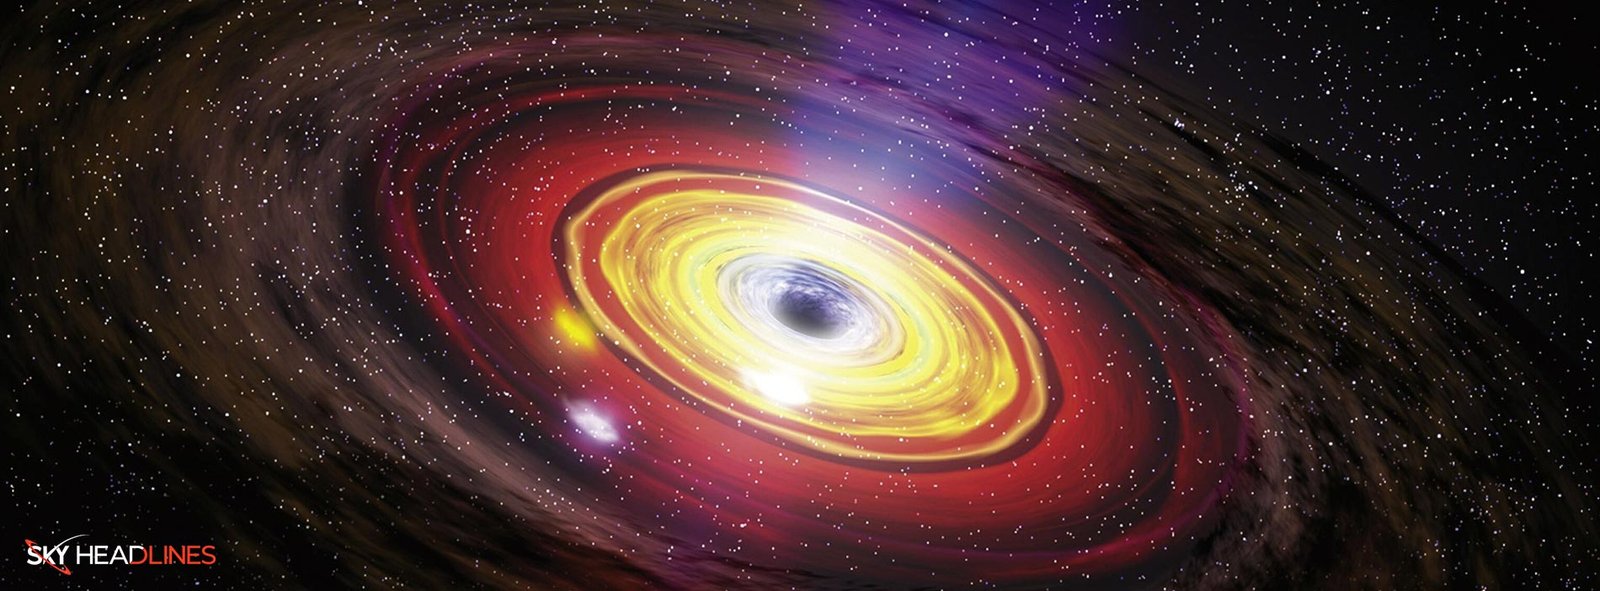 Supermassive-Black-Hole-